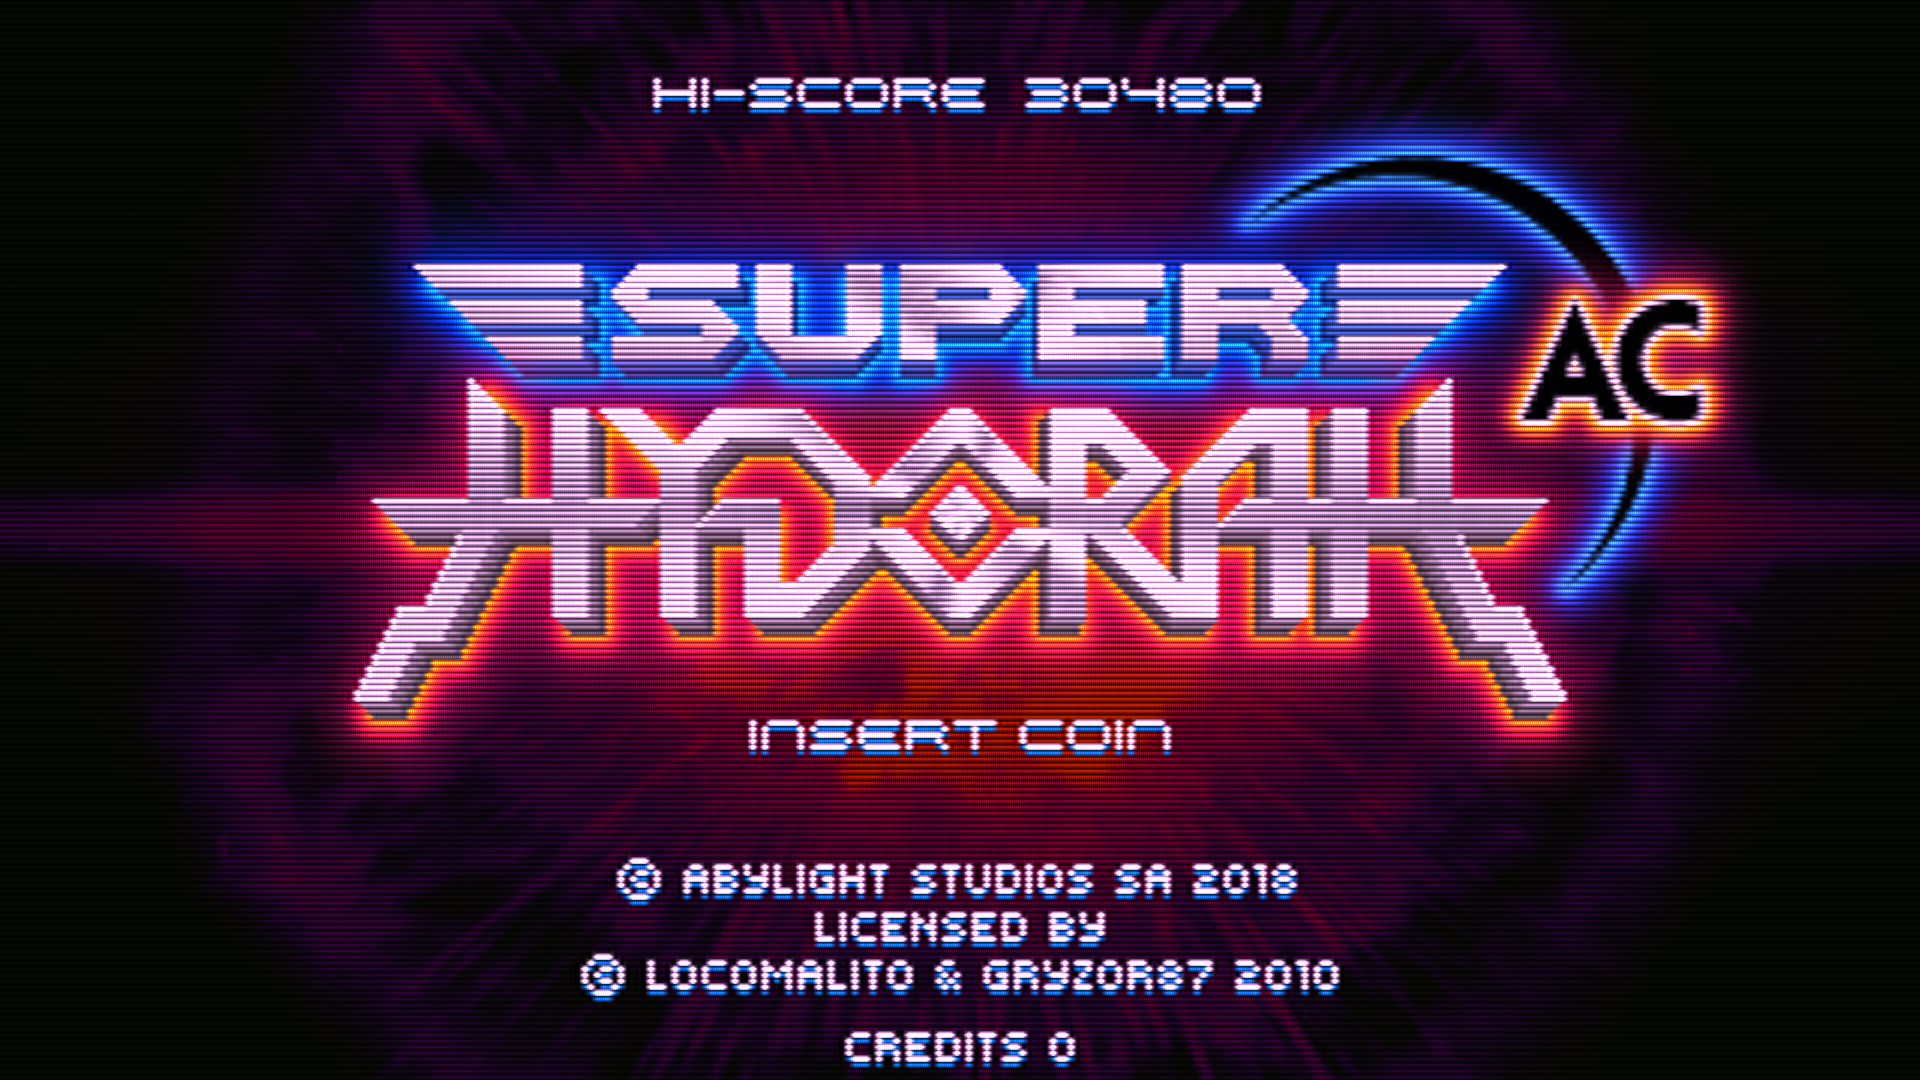 Super Hydorah lands on arcade!